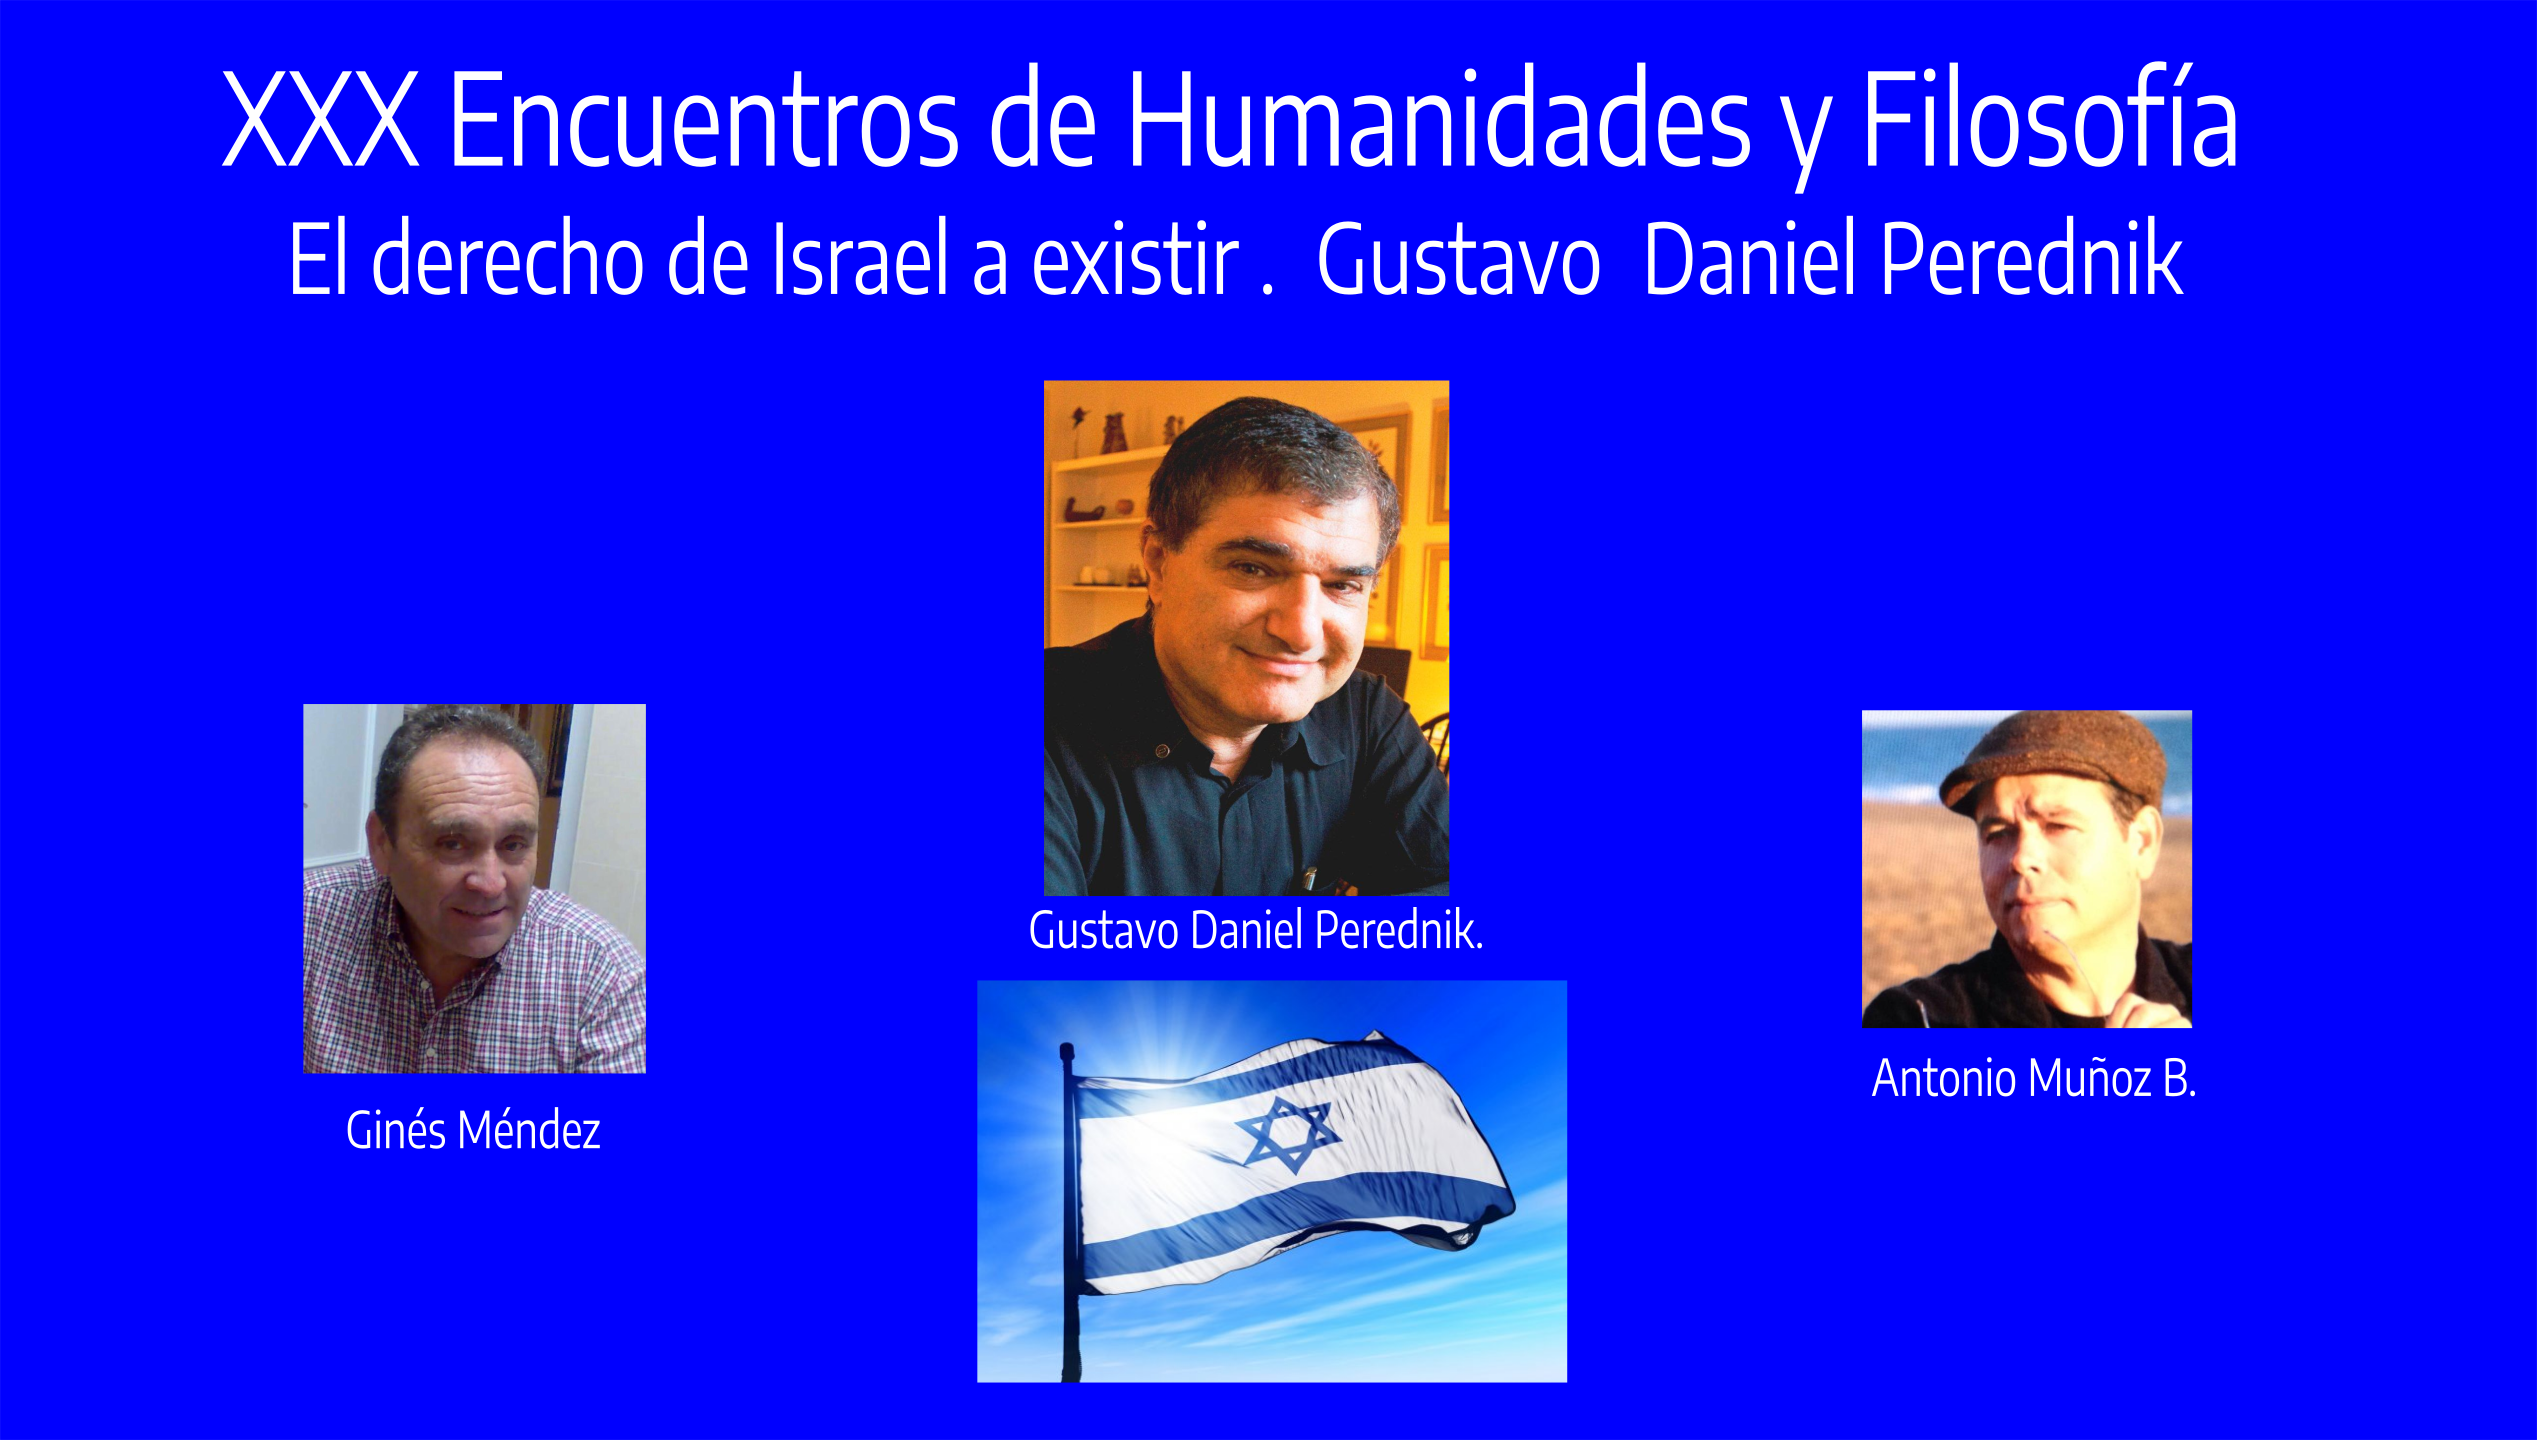 XXX Encuentros de Humanidades y Filosfofía, El derecho de Israel a existir .  Gustavo Daniel Perednik.